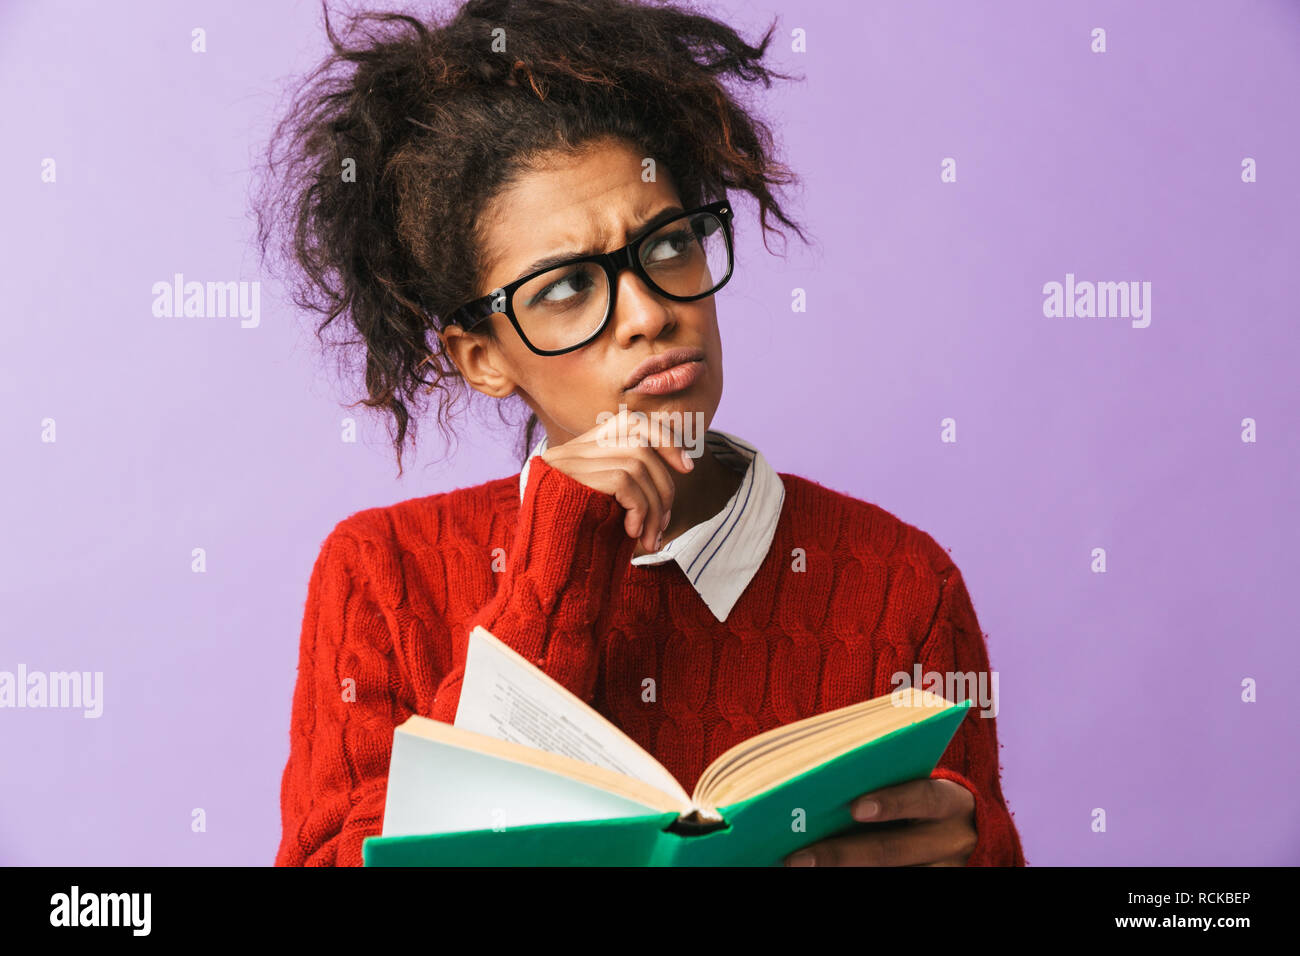 African American smart donna in uniforme scolastica holding e la lettura prenota isolate su sfondo viola Foto Stock